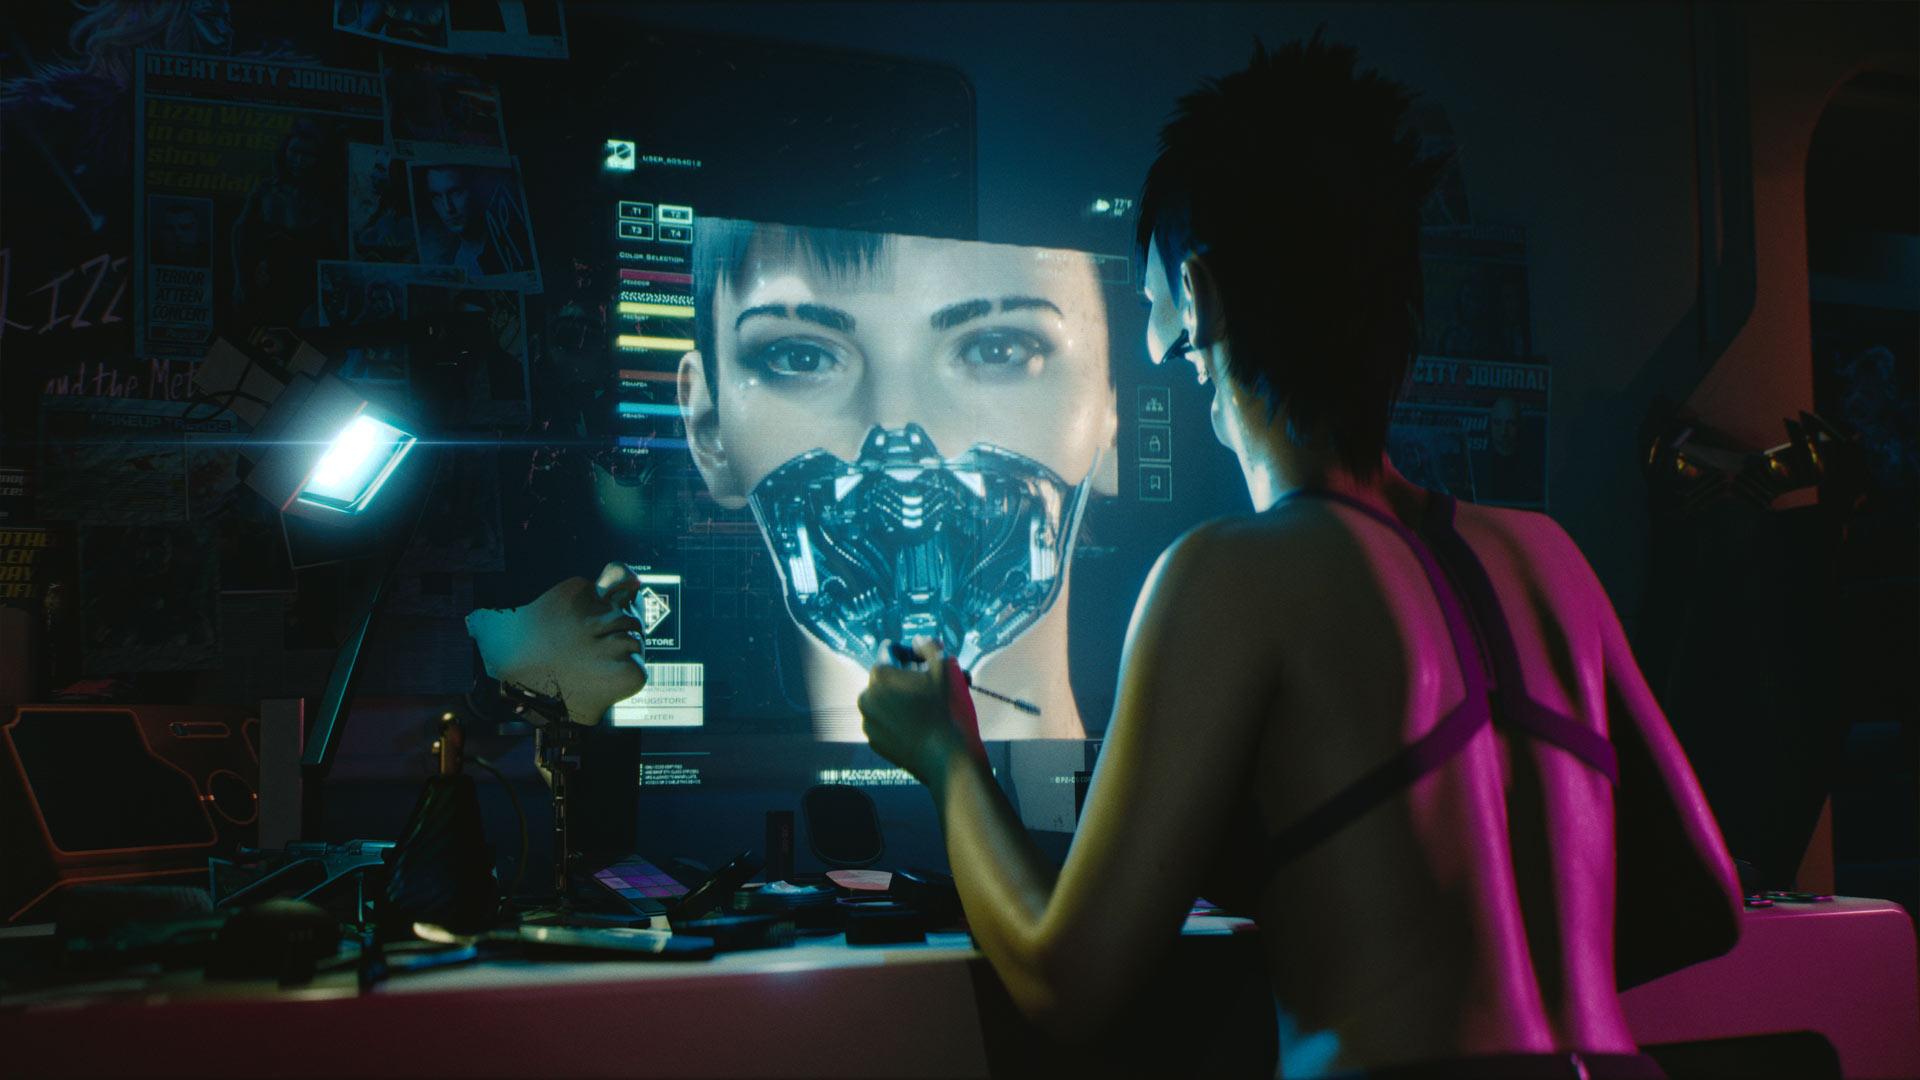 Ihr könnt in Cyberpunk 2077 Charaktere erstellen, Frau oder Mann spielen